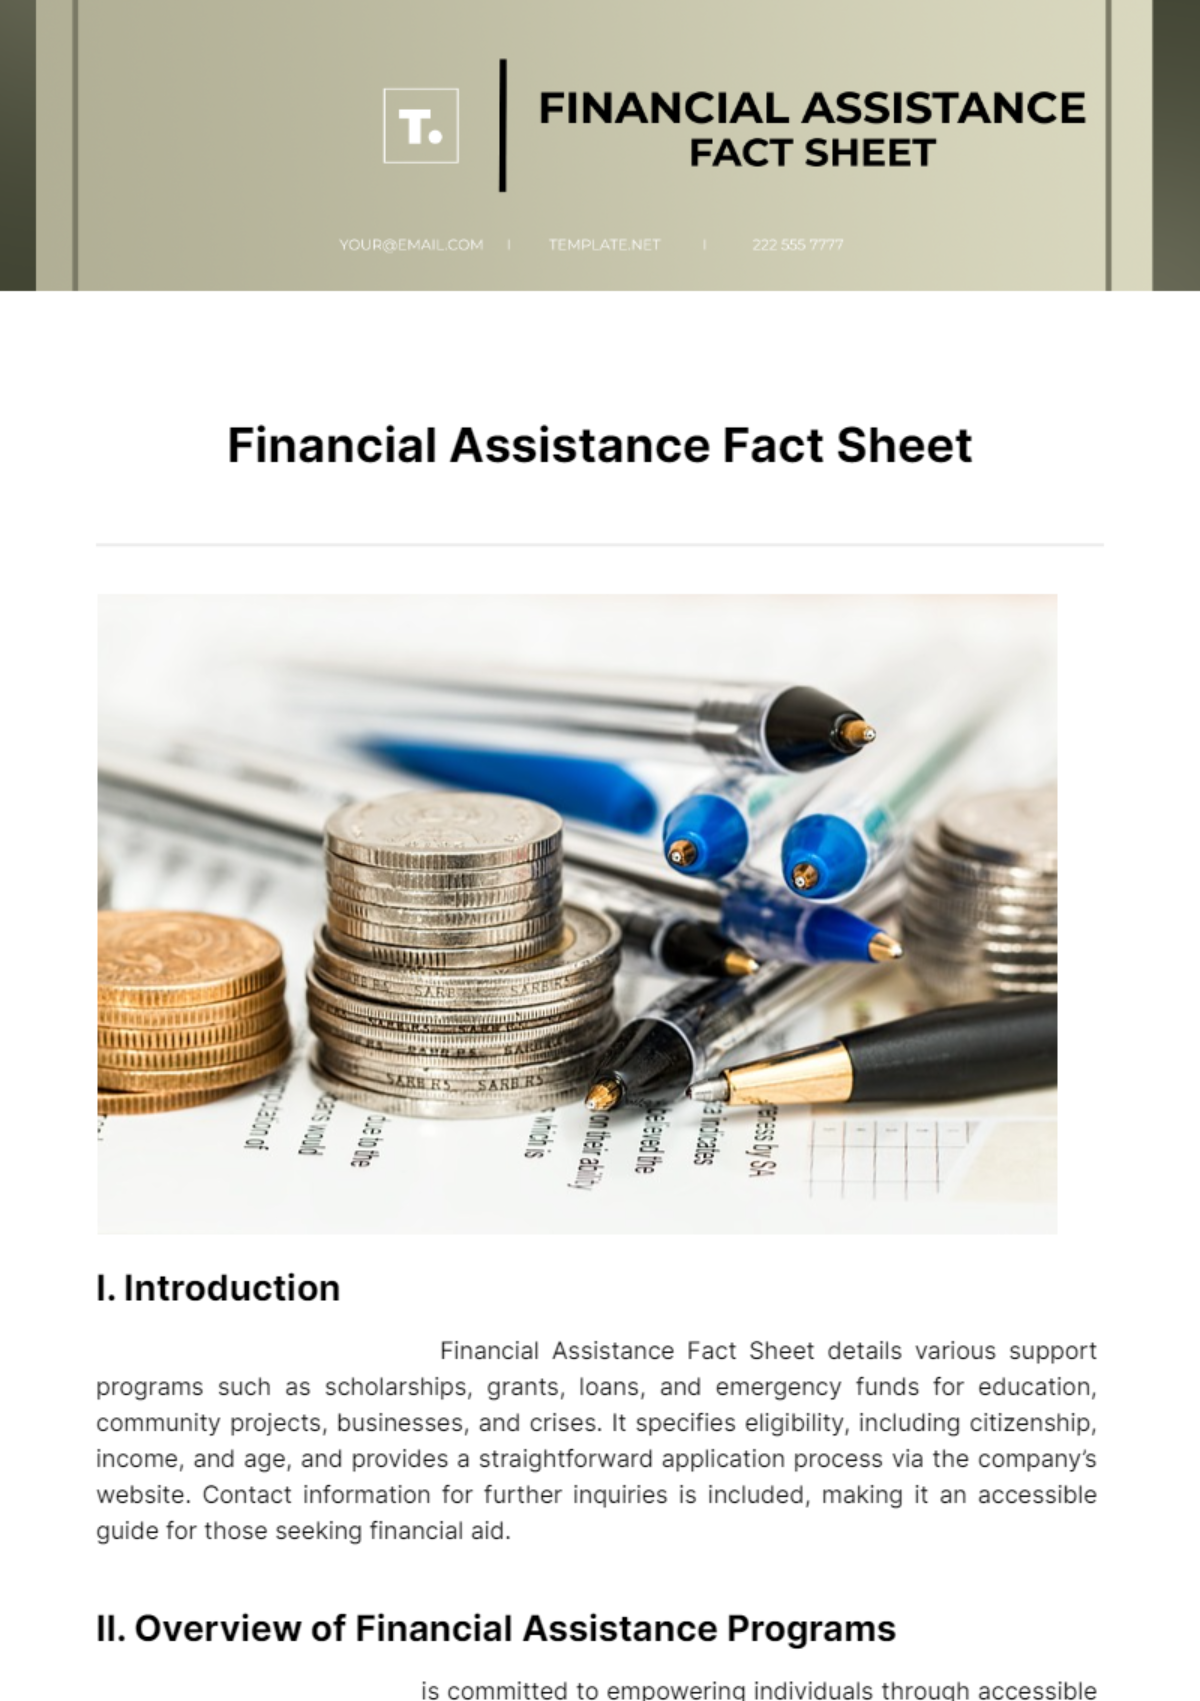 Financial Assistance Fact Sheet Template